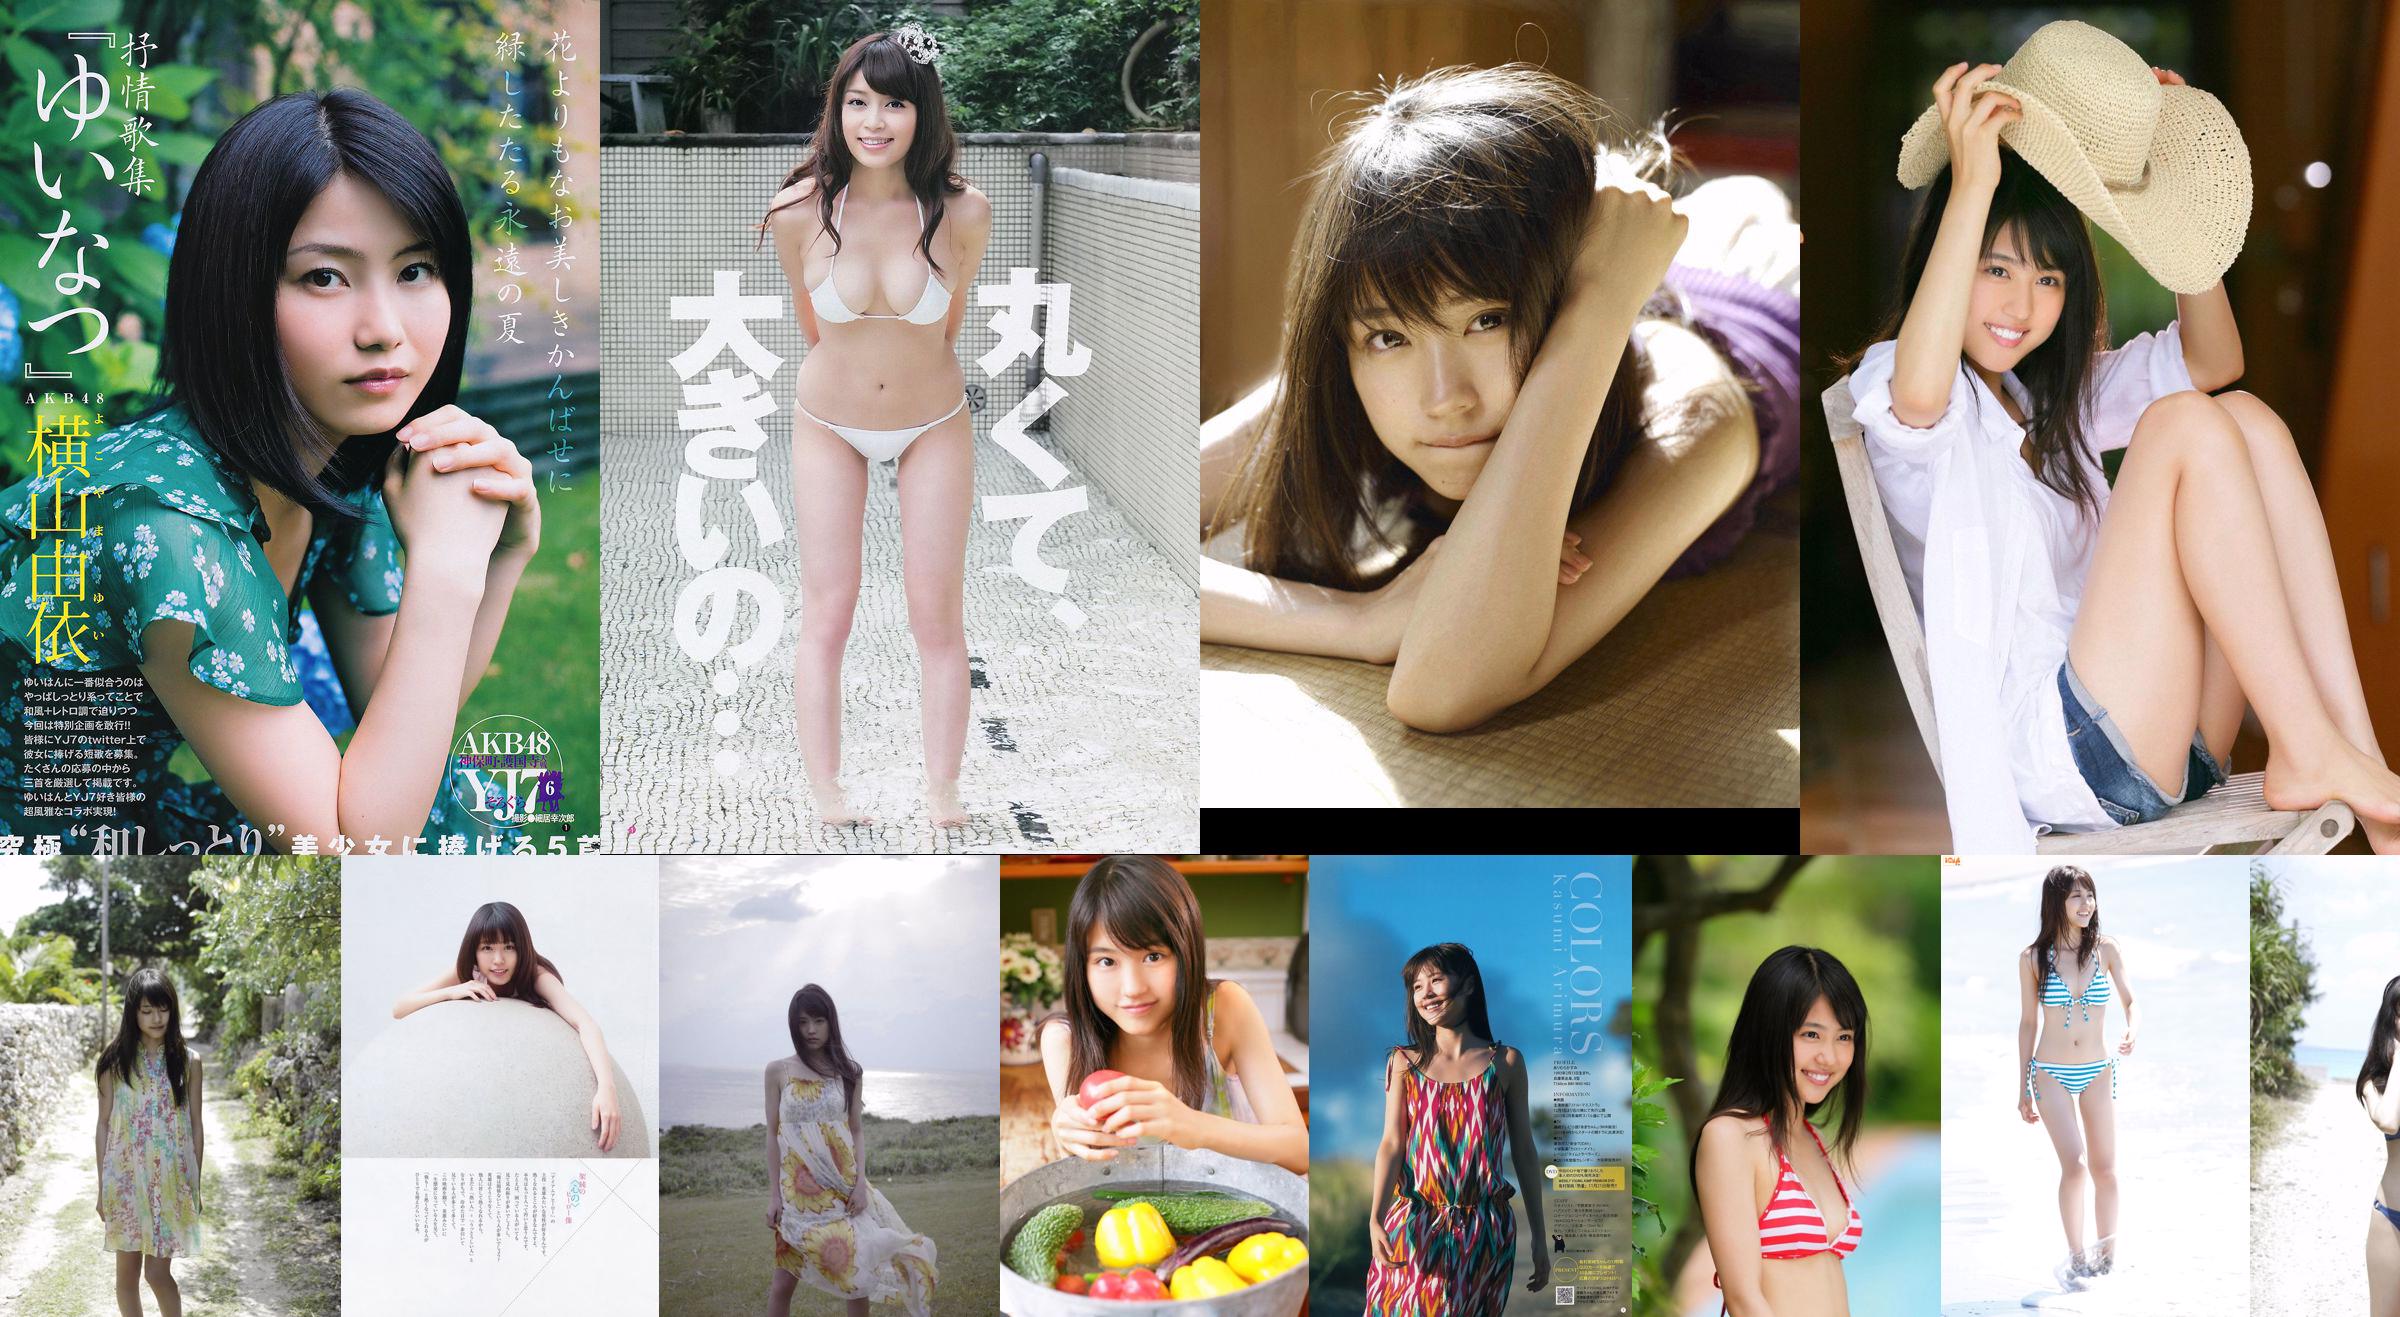 [Bomb.TV] Numéro de novembre 2011 Arimura Kasumi No.36a71a Page 3